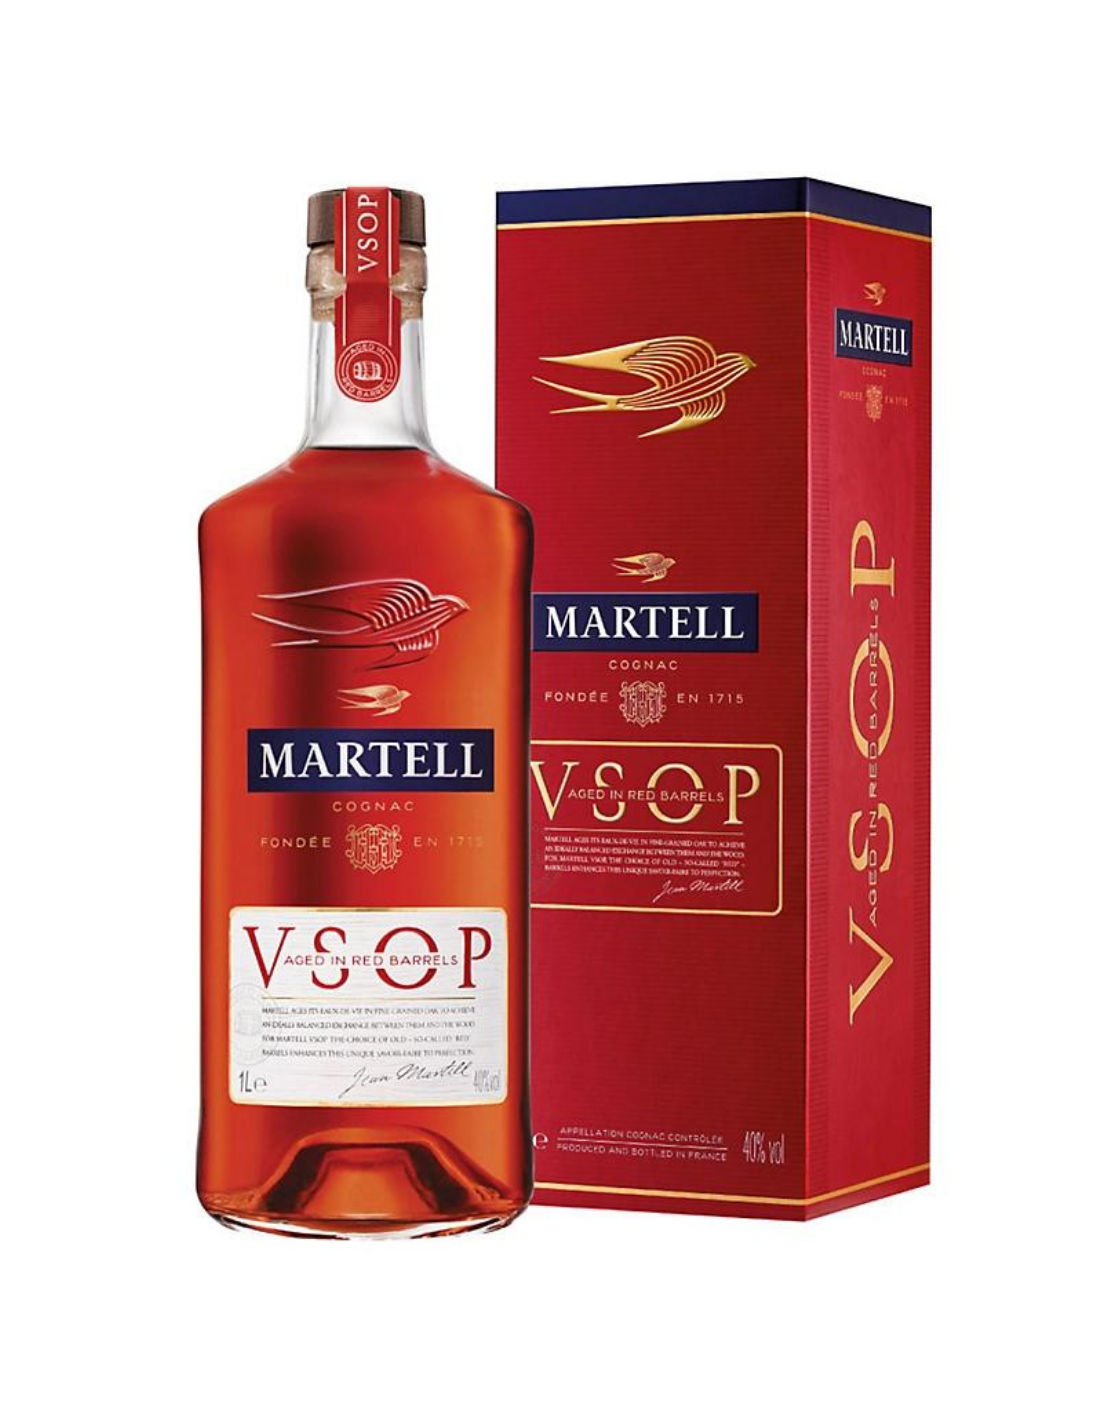 Coniac Martell VSOP, 40% alc., 0.7L, Franta alcooldiscount.ro